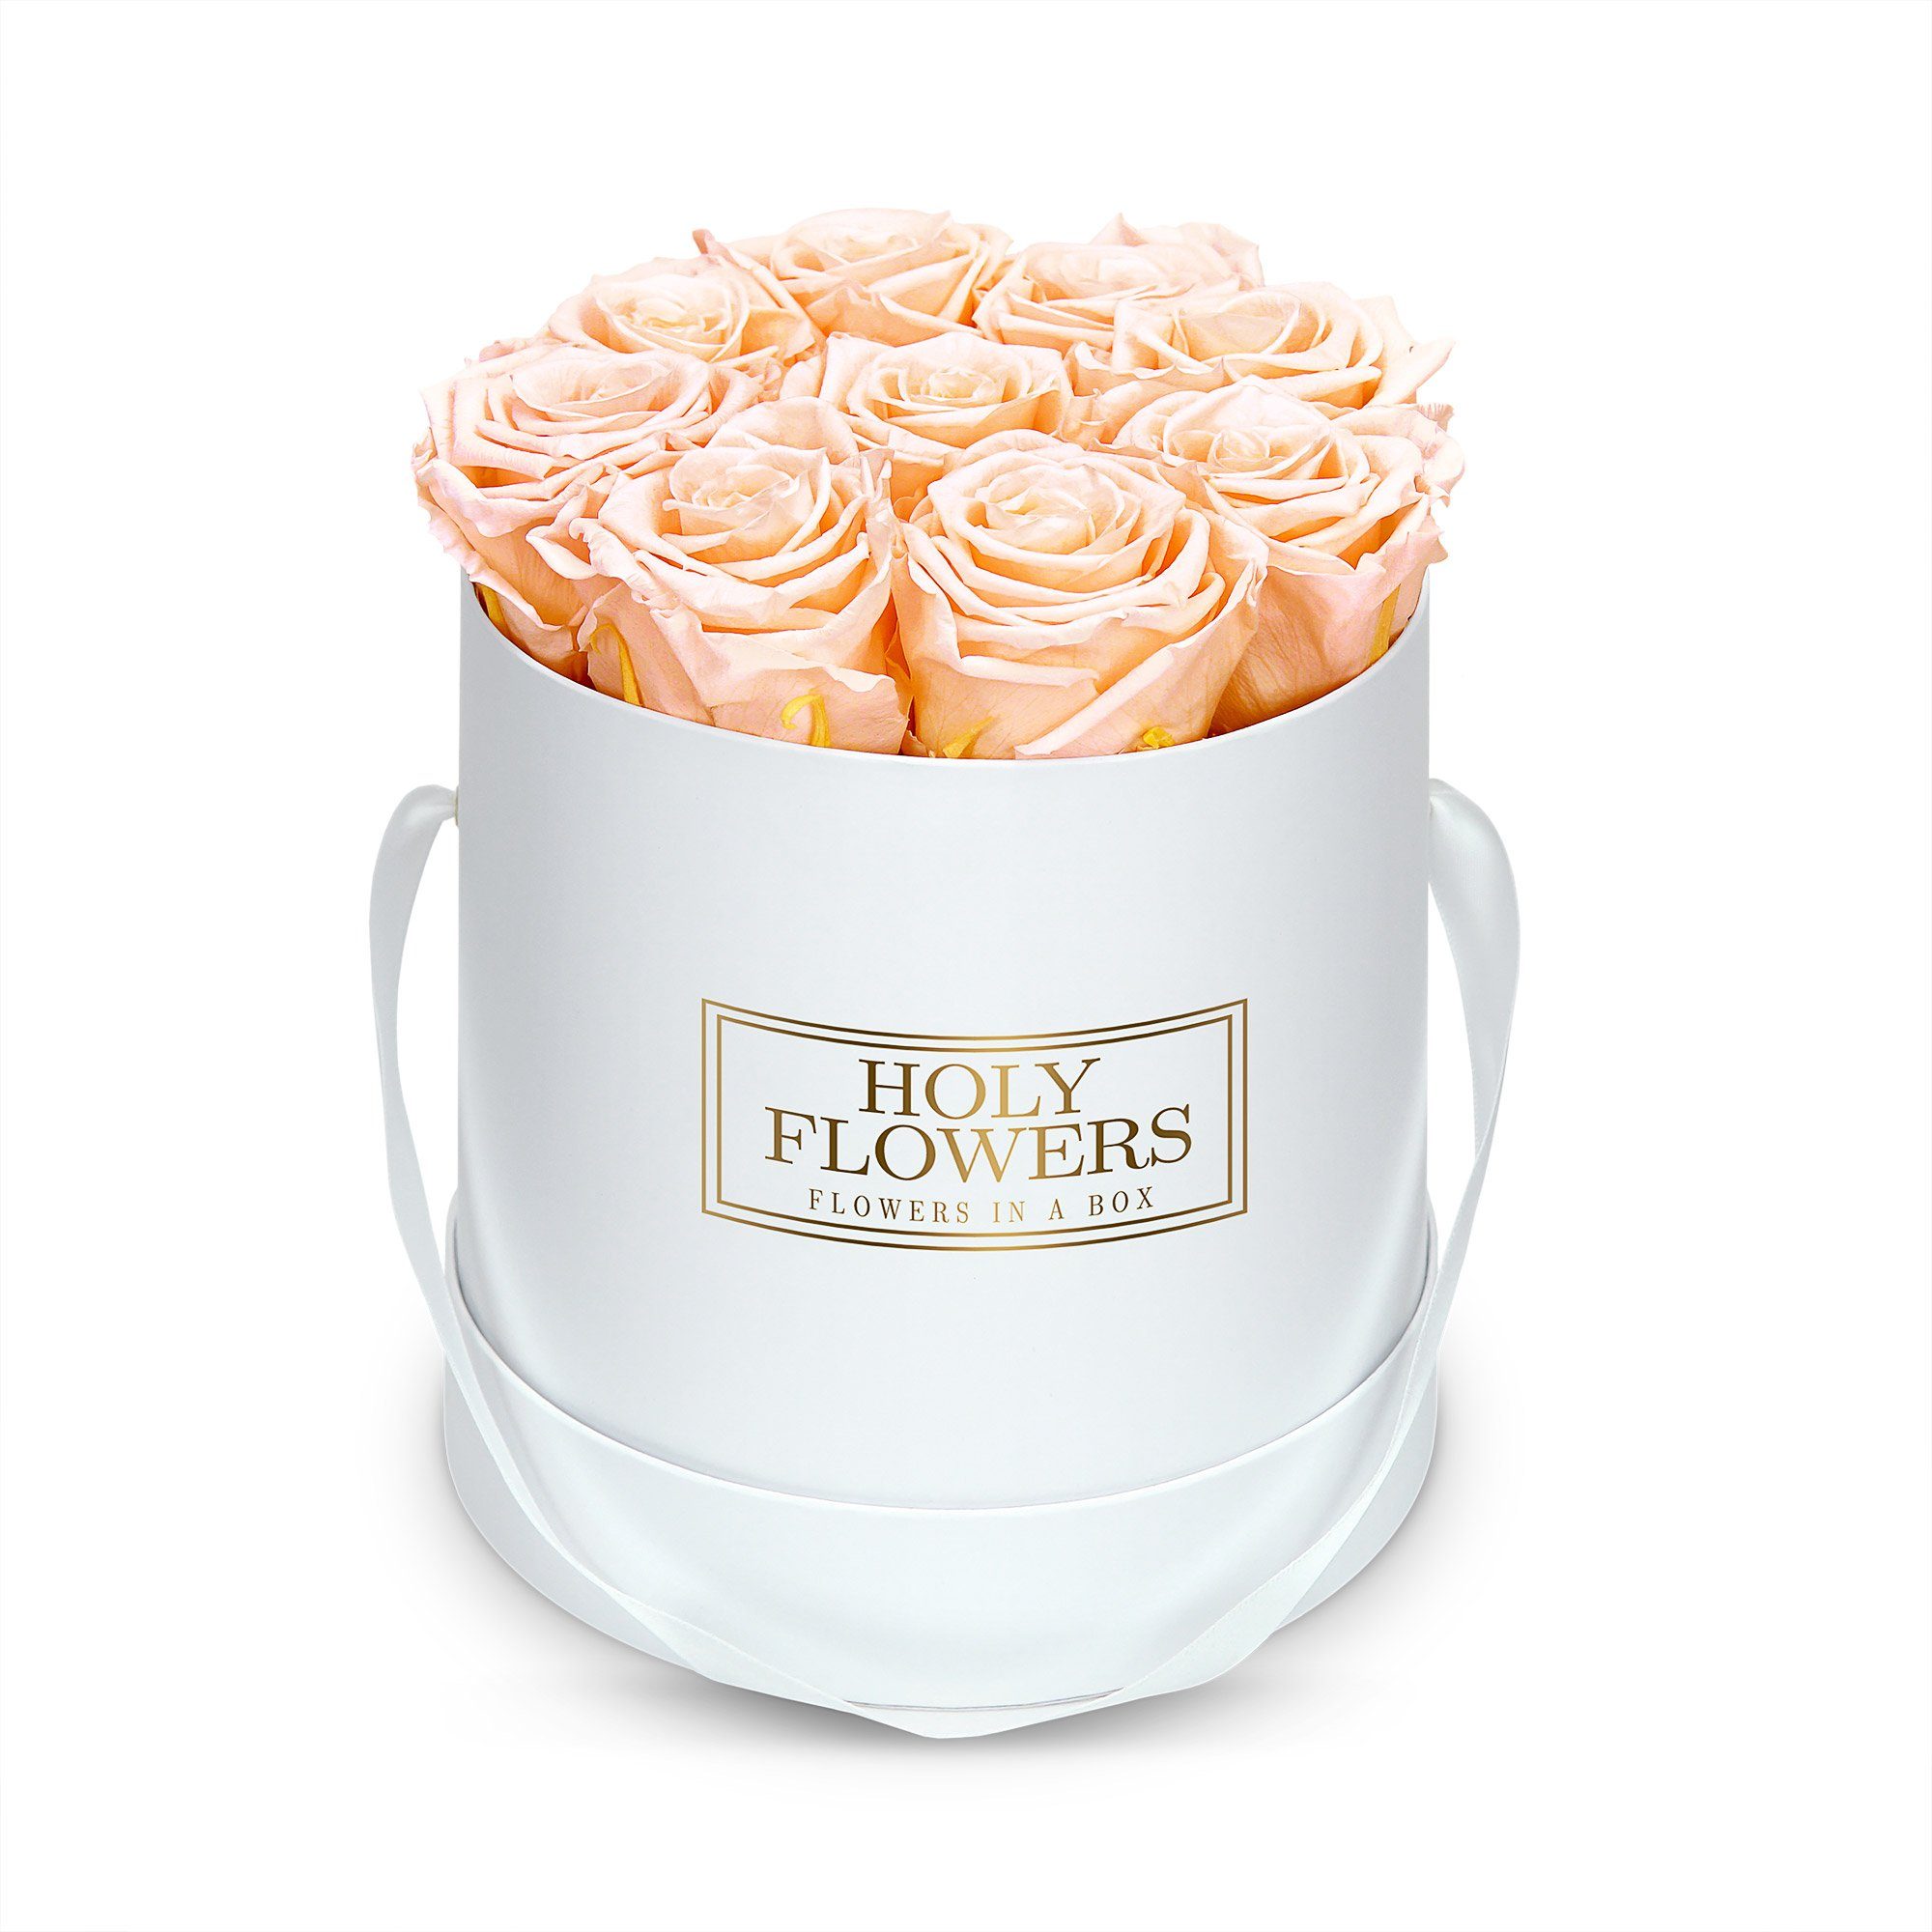 Petite Fleur Infinity Rosen Flowerbox S weiß langanhaltende farbenprächtige rosa Blüten 4 bis 5 konservierte Rosen quadratisch 10 x 15 cm